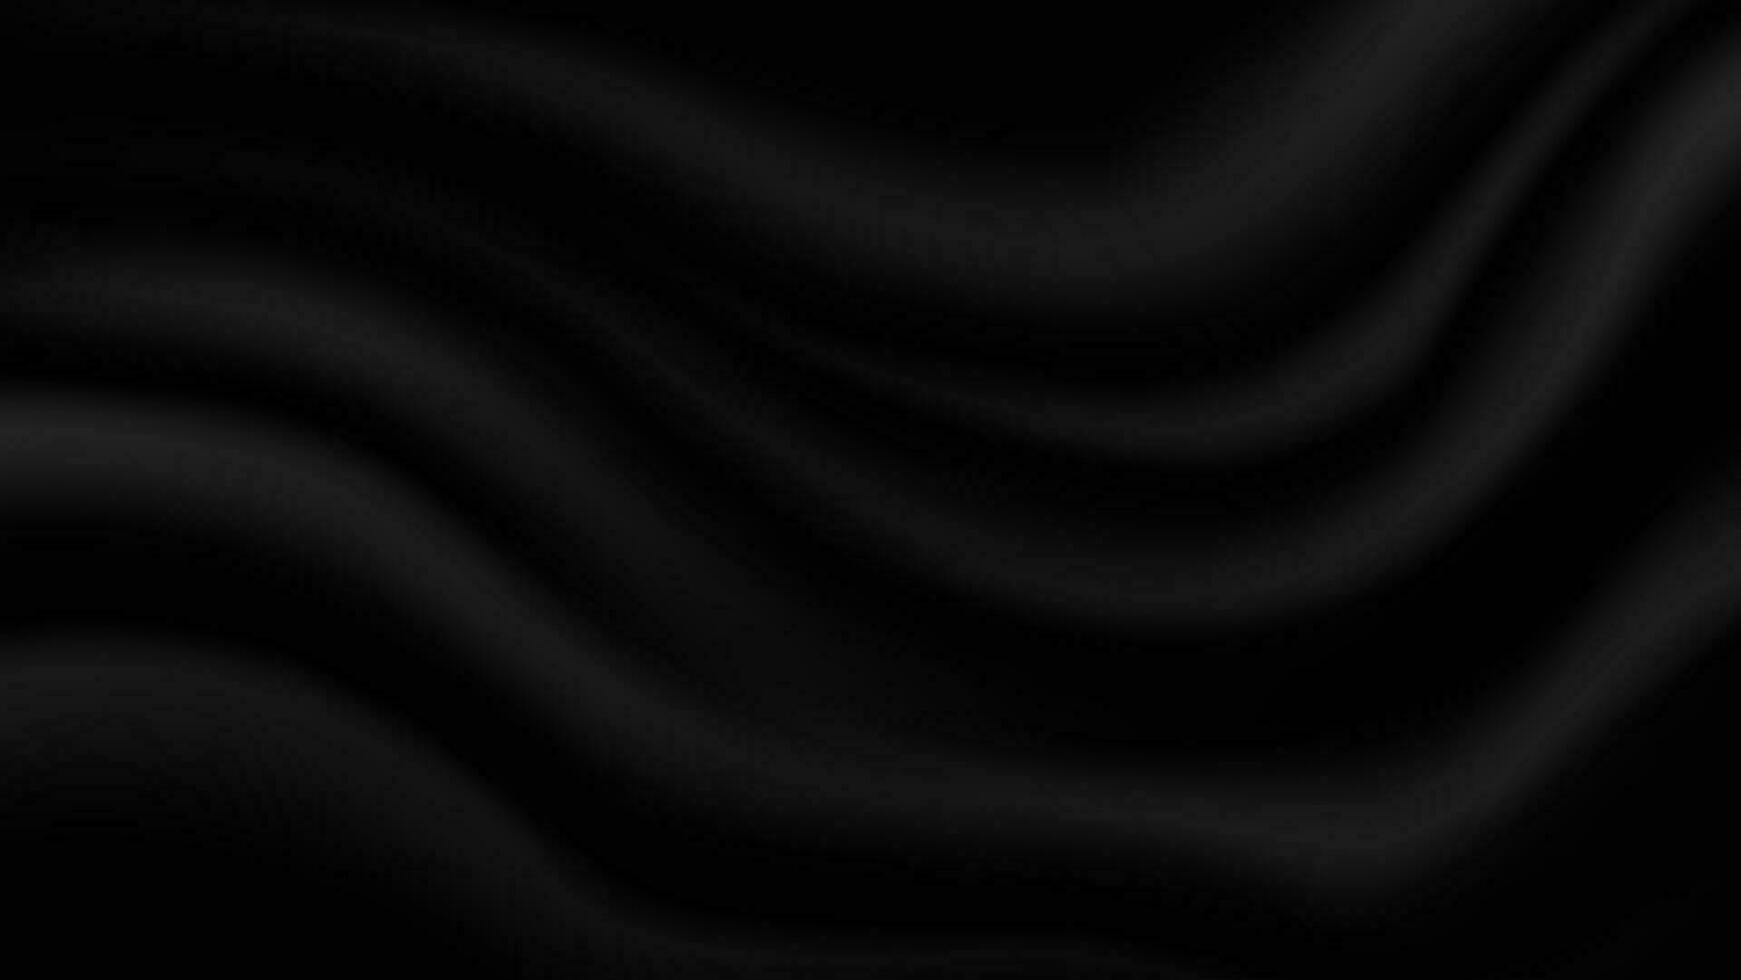 abstrakt tom svart mjuk skrynkligt satin tyg hopfällbar textur bakgrund för dekorativ grafisk design vektor